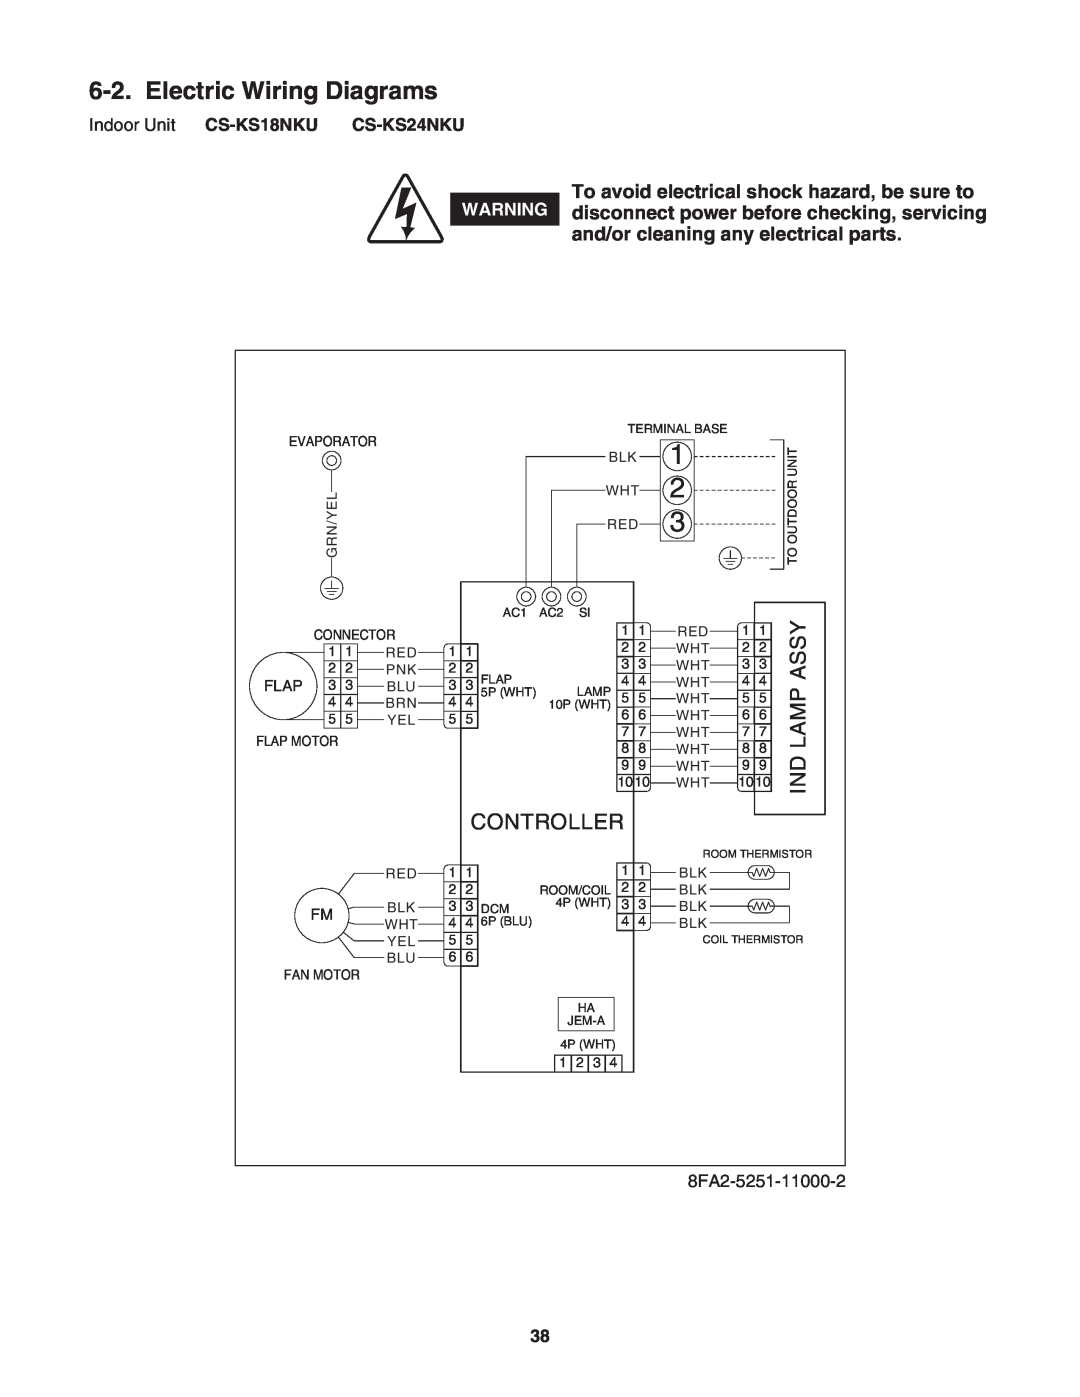 Panasonic CU-KS24NKUA, CS-KS24NKU service manual Electric Wiring Diagrams, Assy, Lamp, Controller 